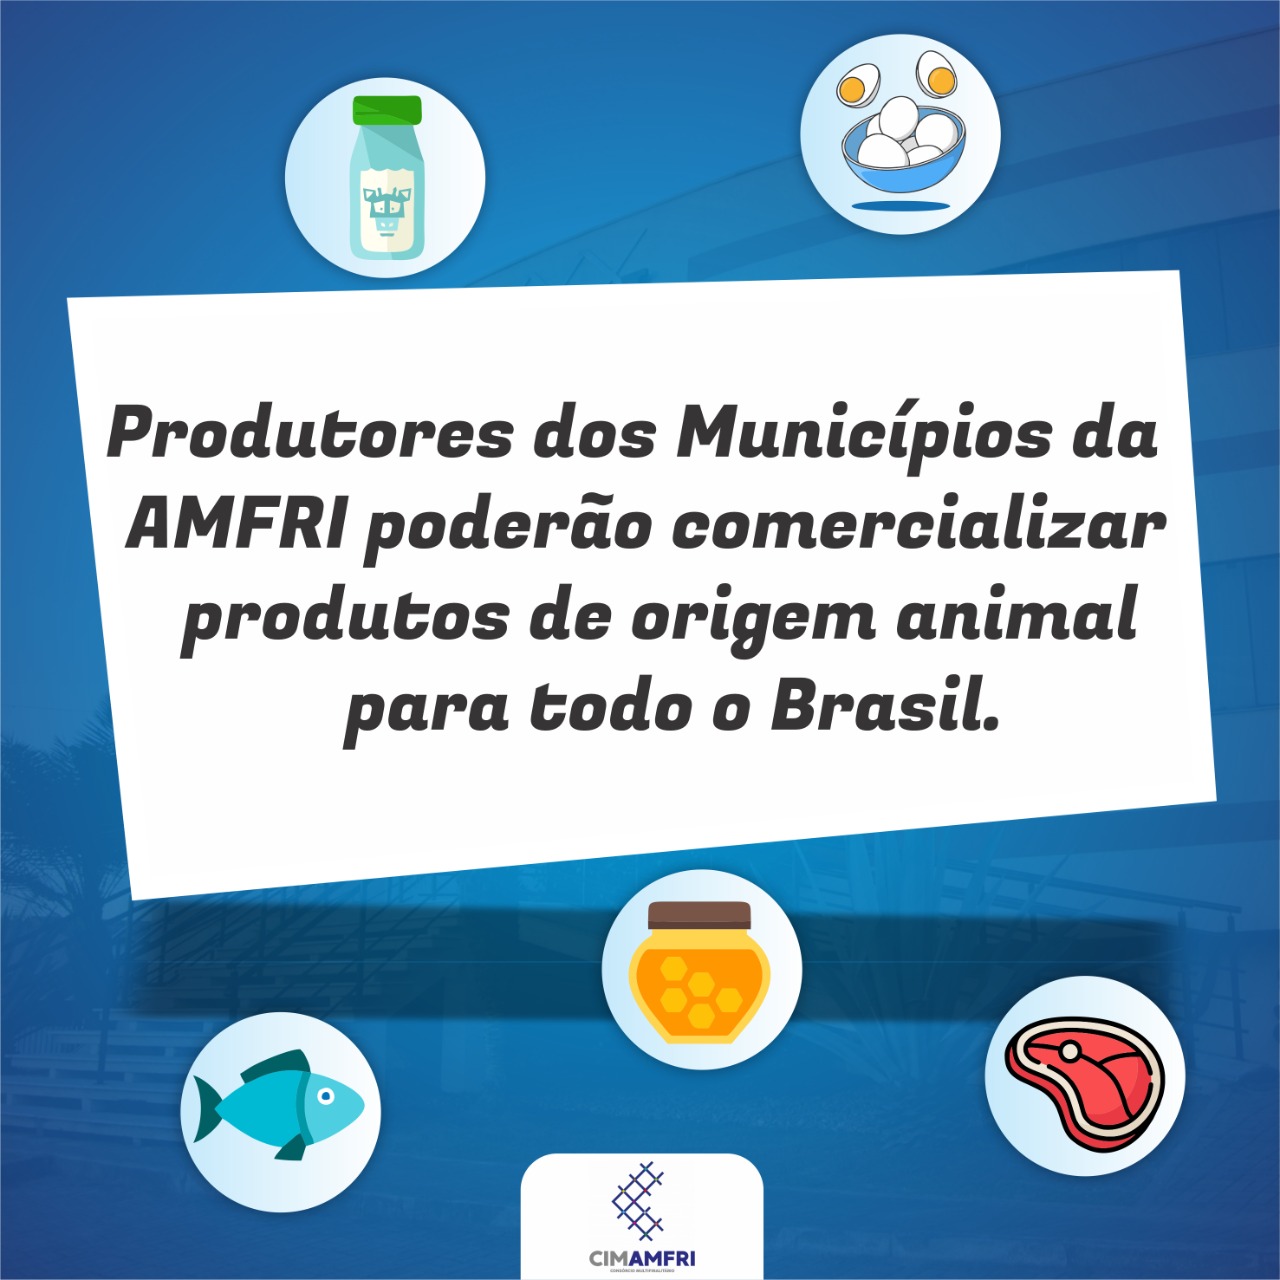 You are currently viewing Produtores dos Municípios da AMFRI poderão comercializar produtos de origem animal para todo o Brasil